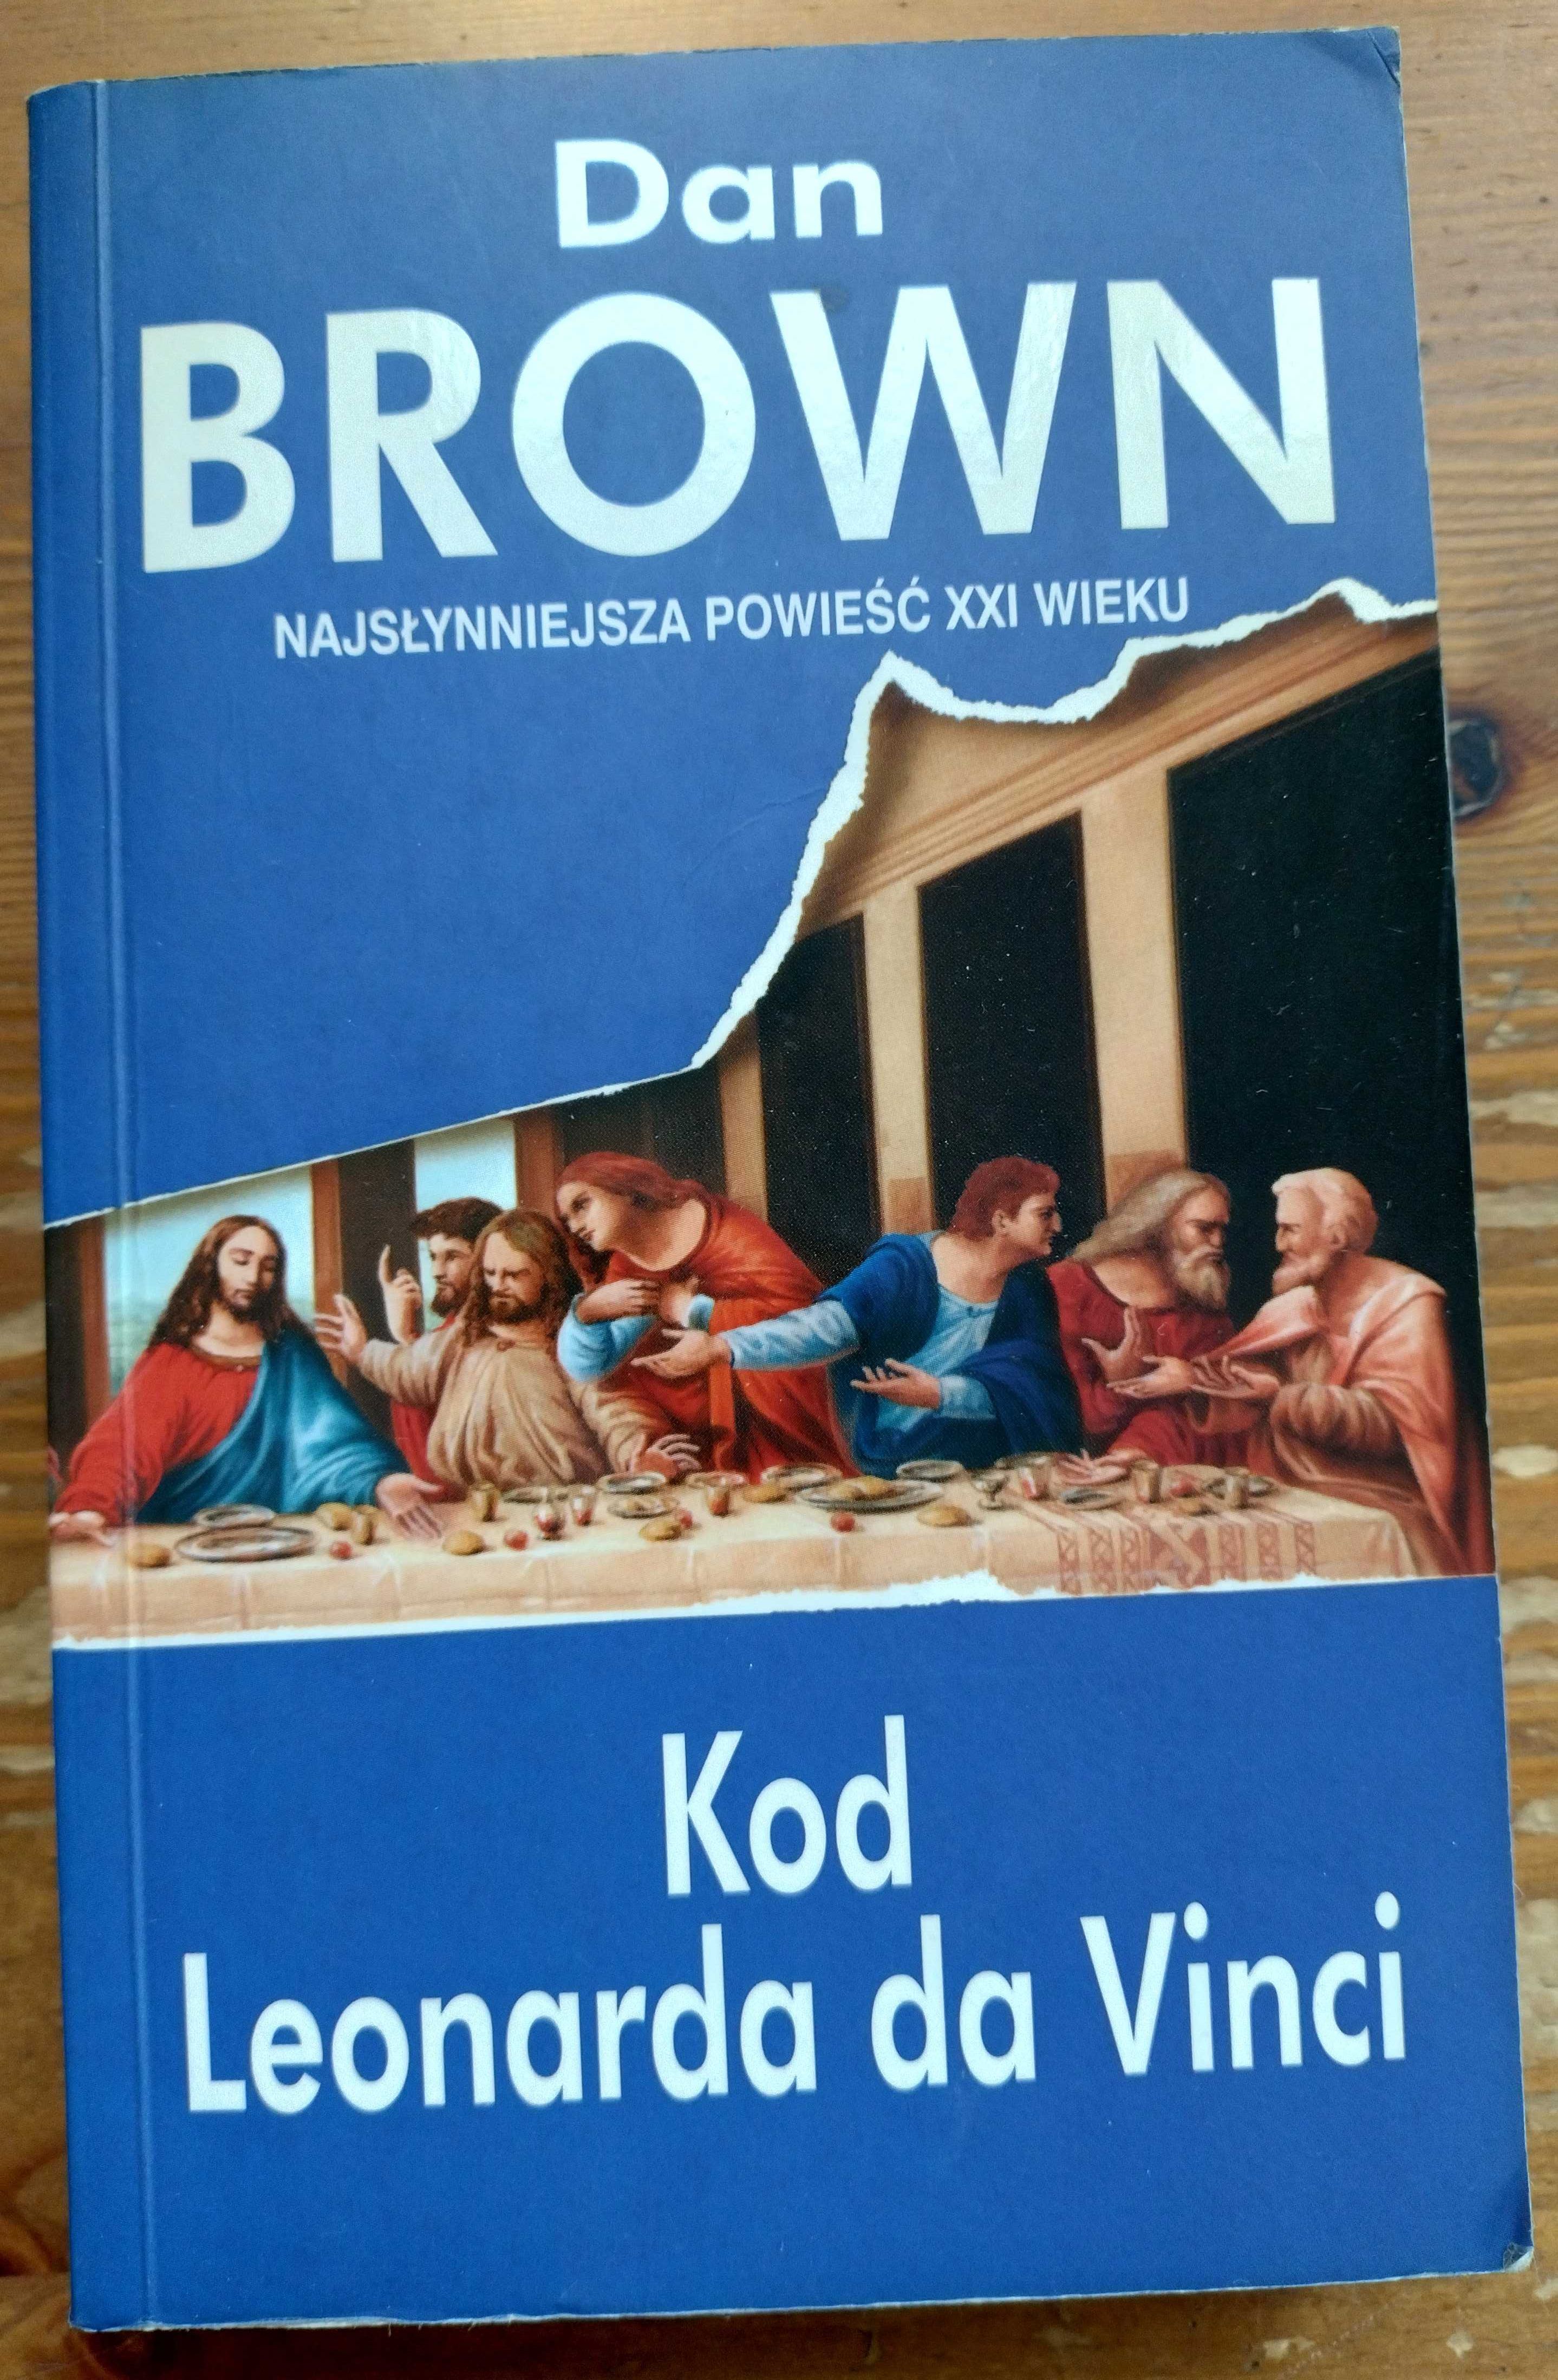 Dan Brown - Kod Leonarda da Vinci, 2005 rok, słynna powieść XXI wieku